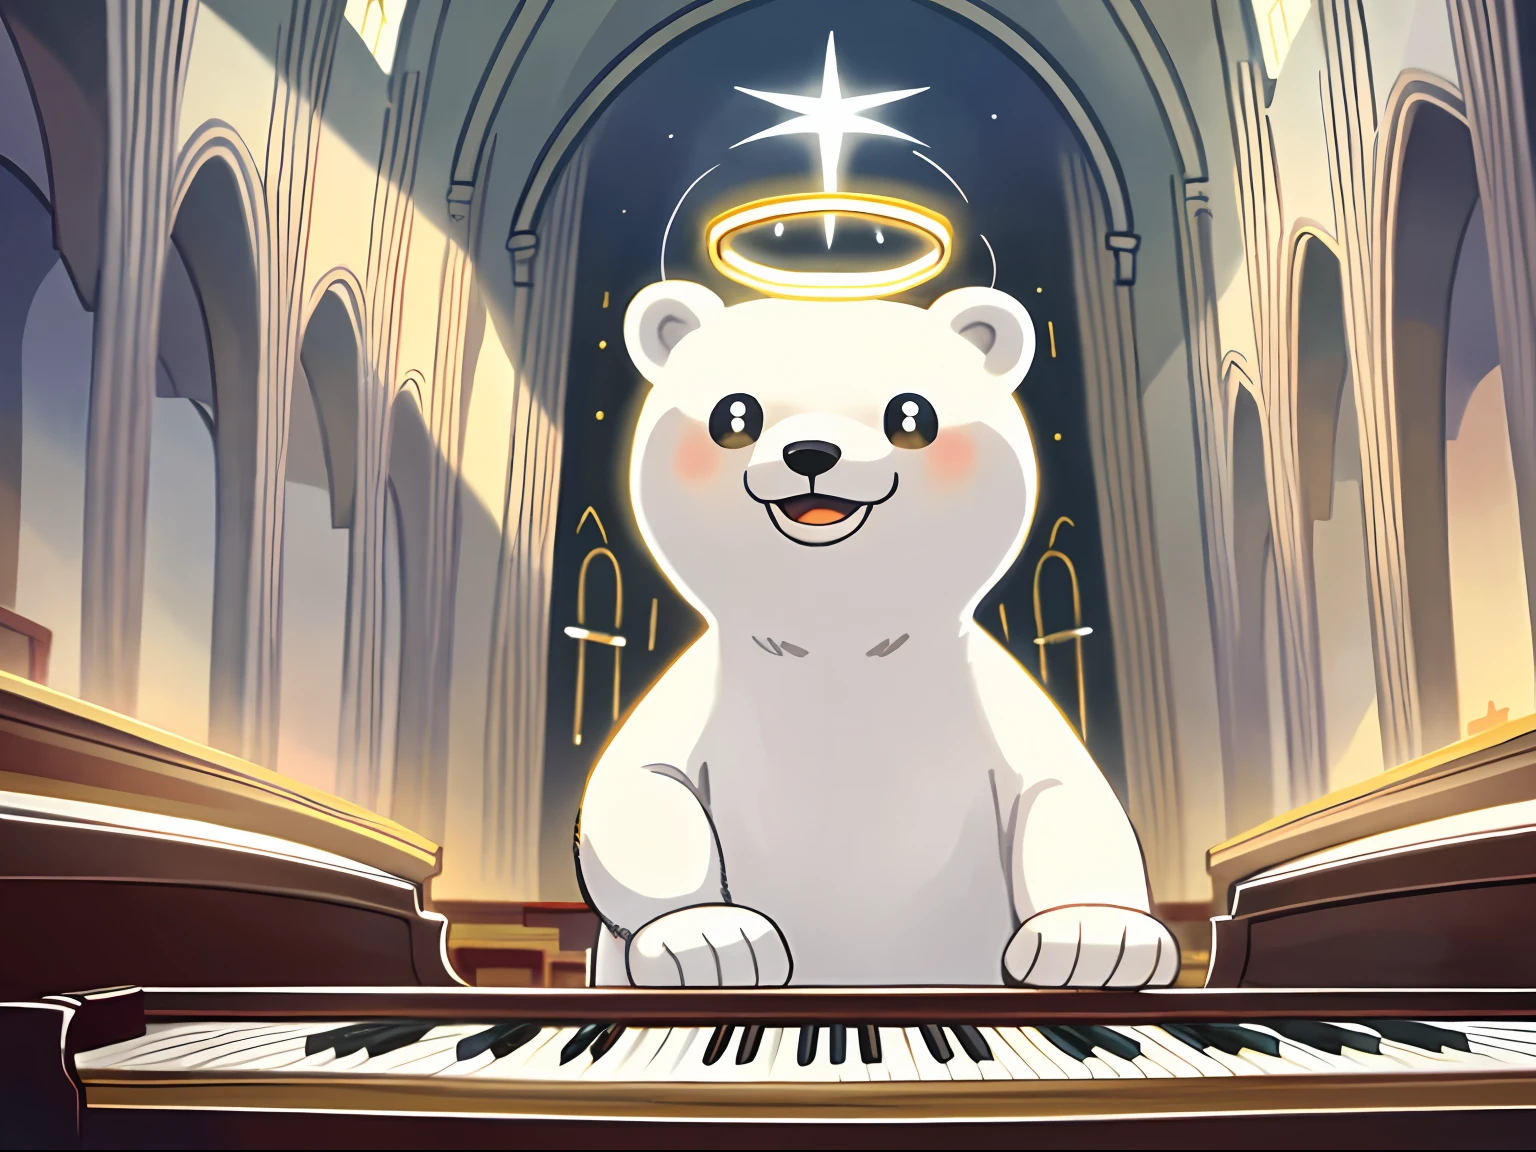 杰作, 最好的质量, 可爱的北极熊, 弹钢琴, 神光, 阳光, 教堂内, 灿烂的笑容, 独奏焦点,光环, 光环,